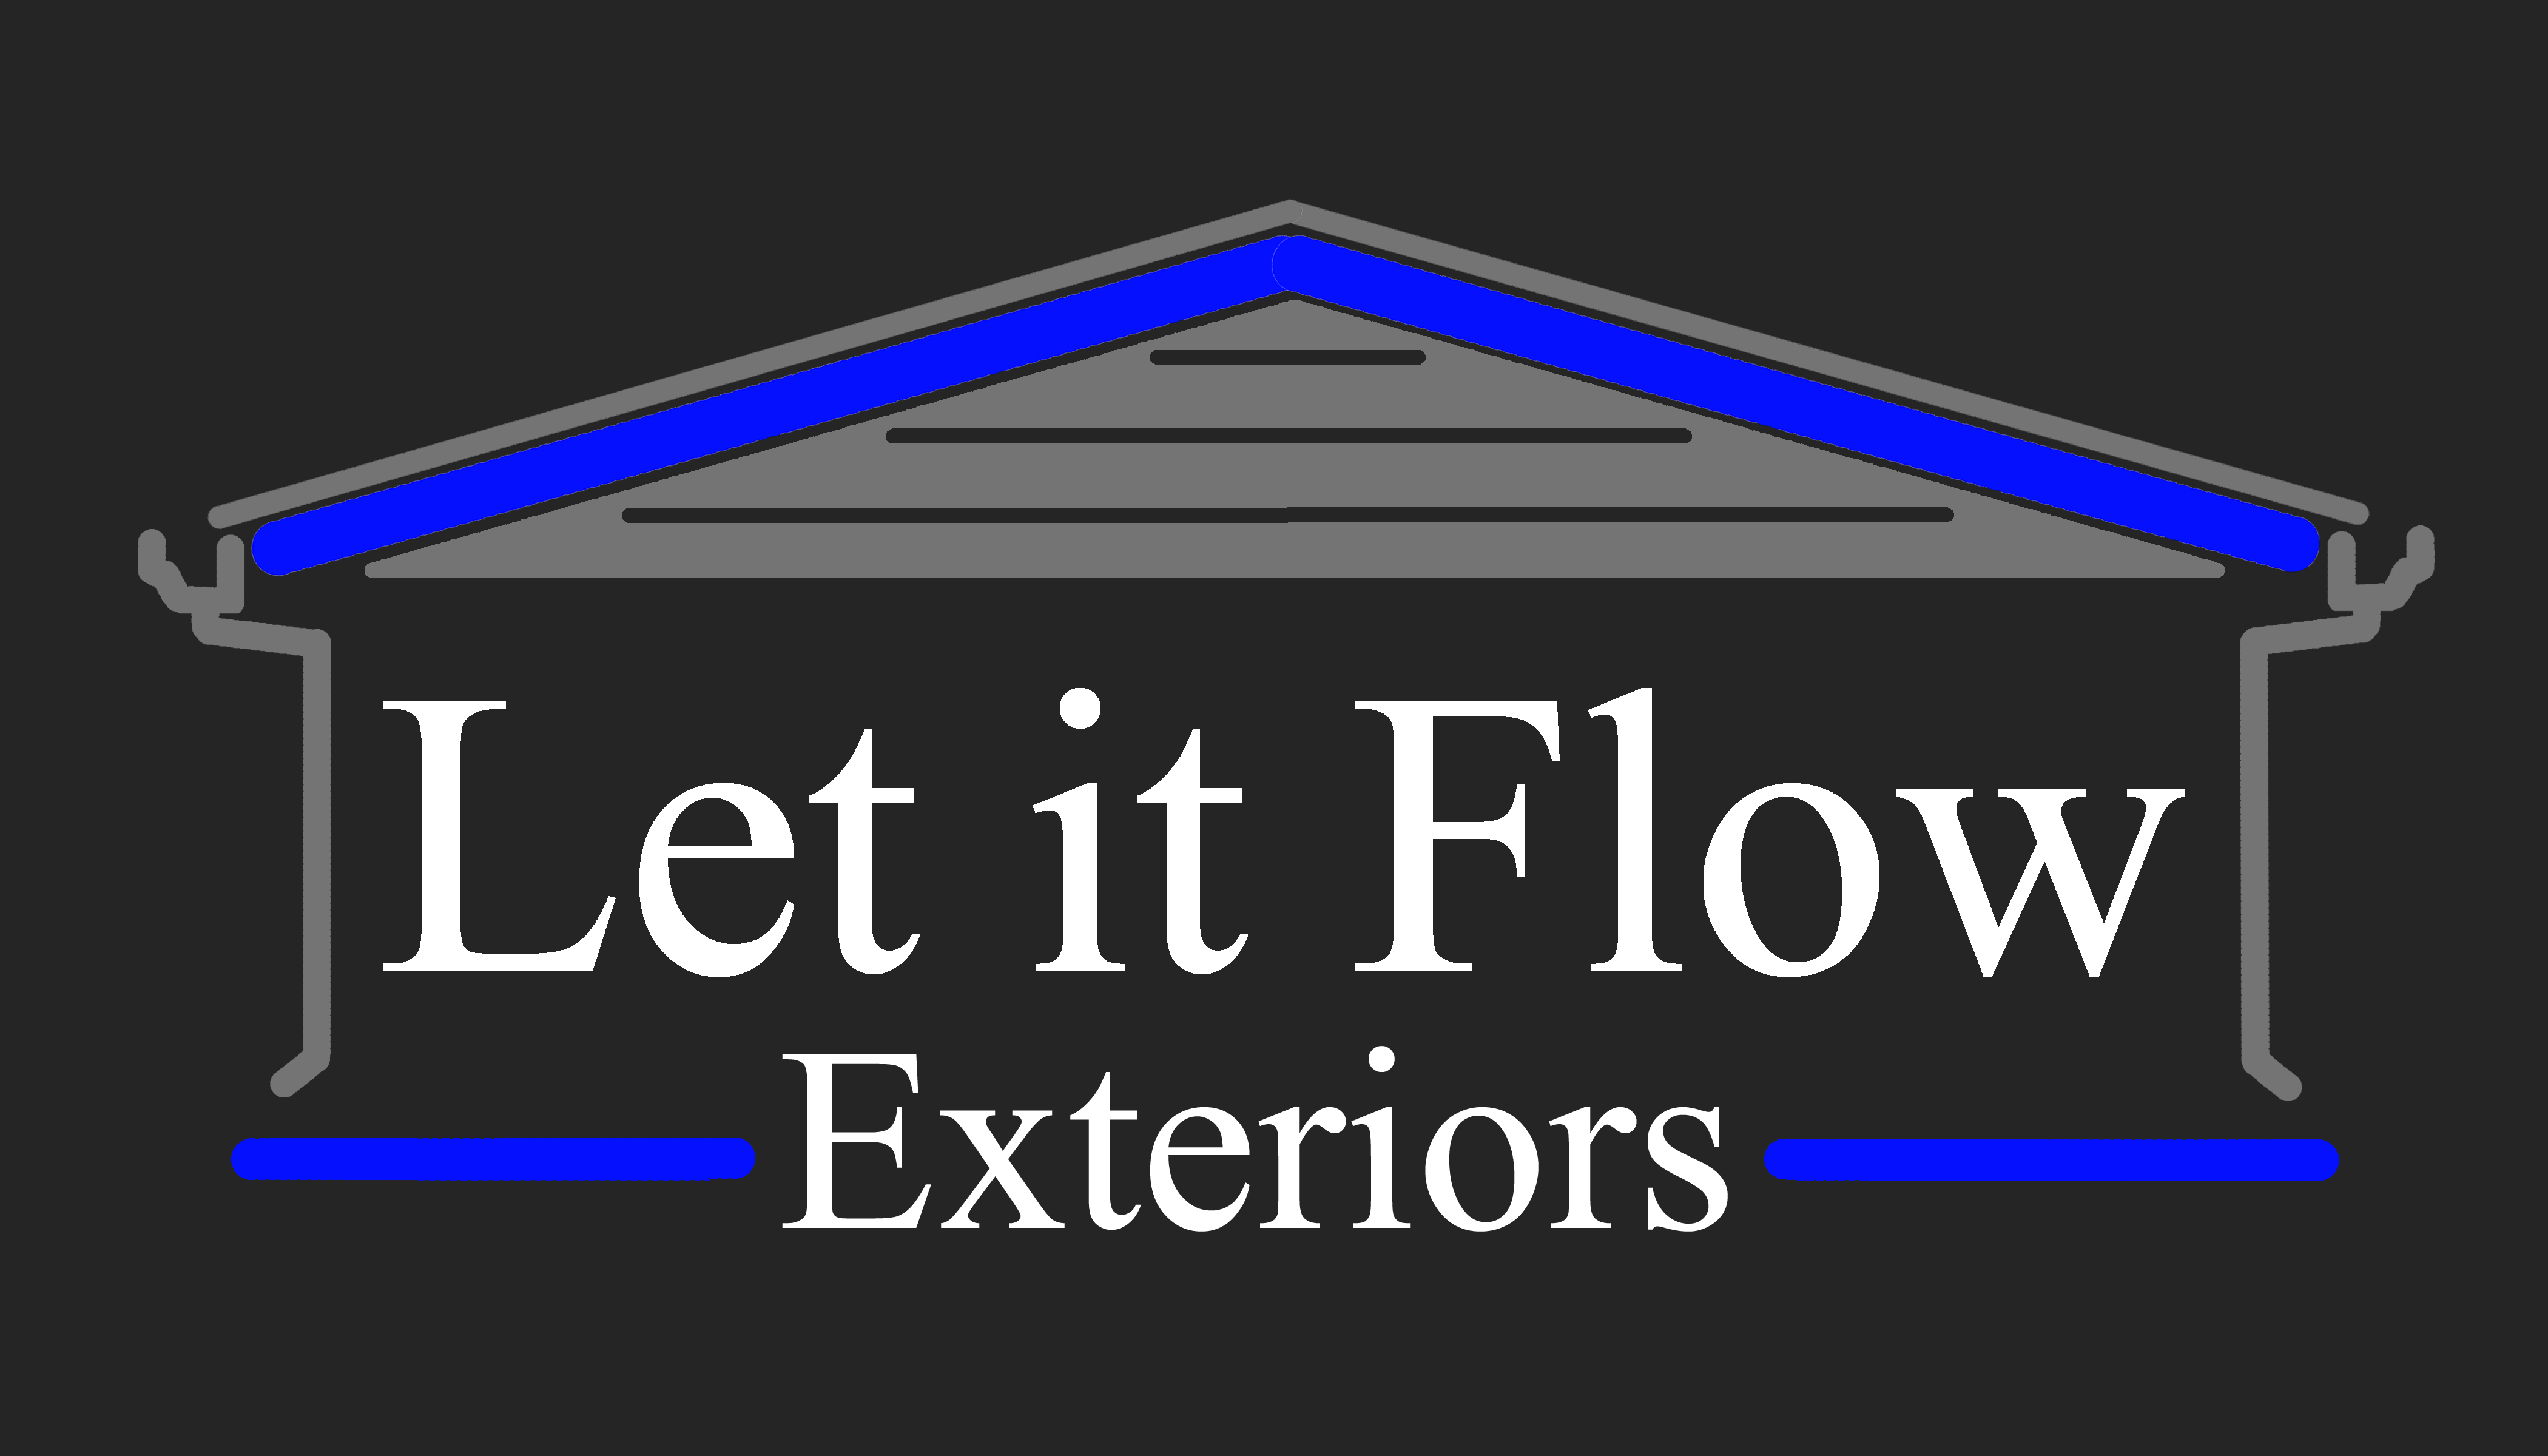 Let It Flow Exteriors